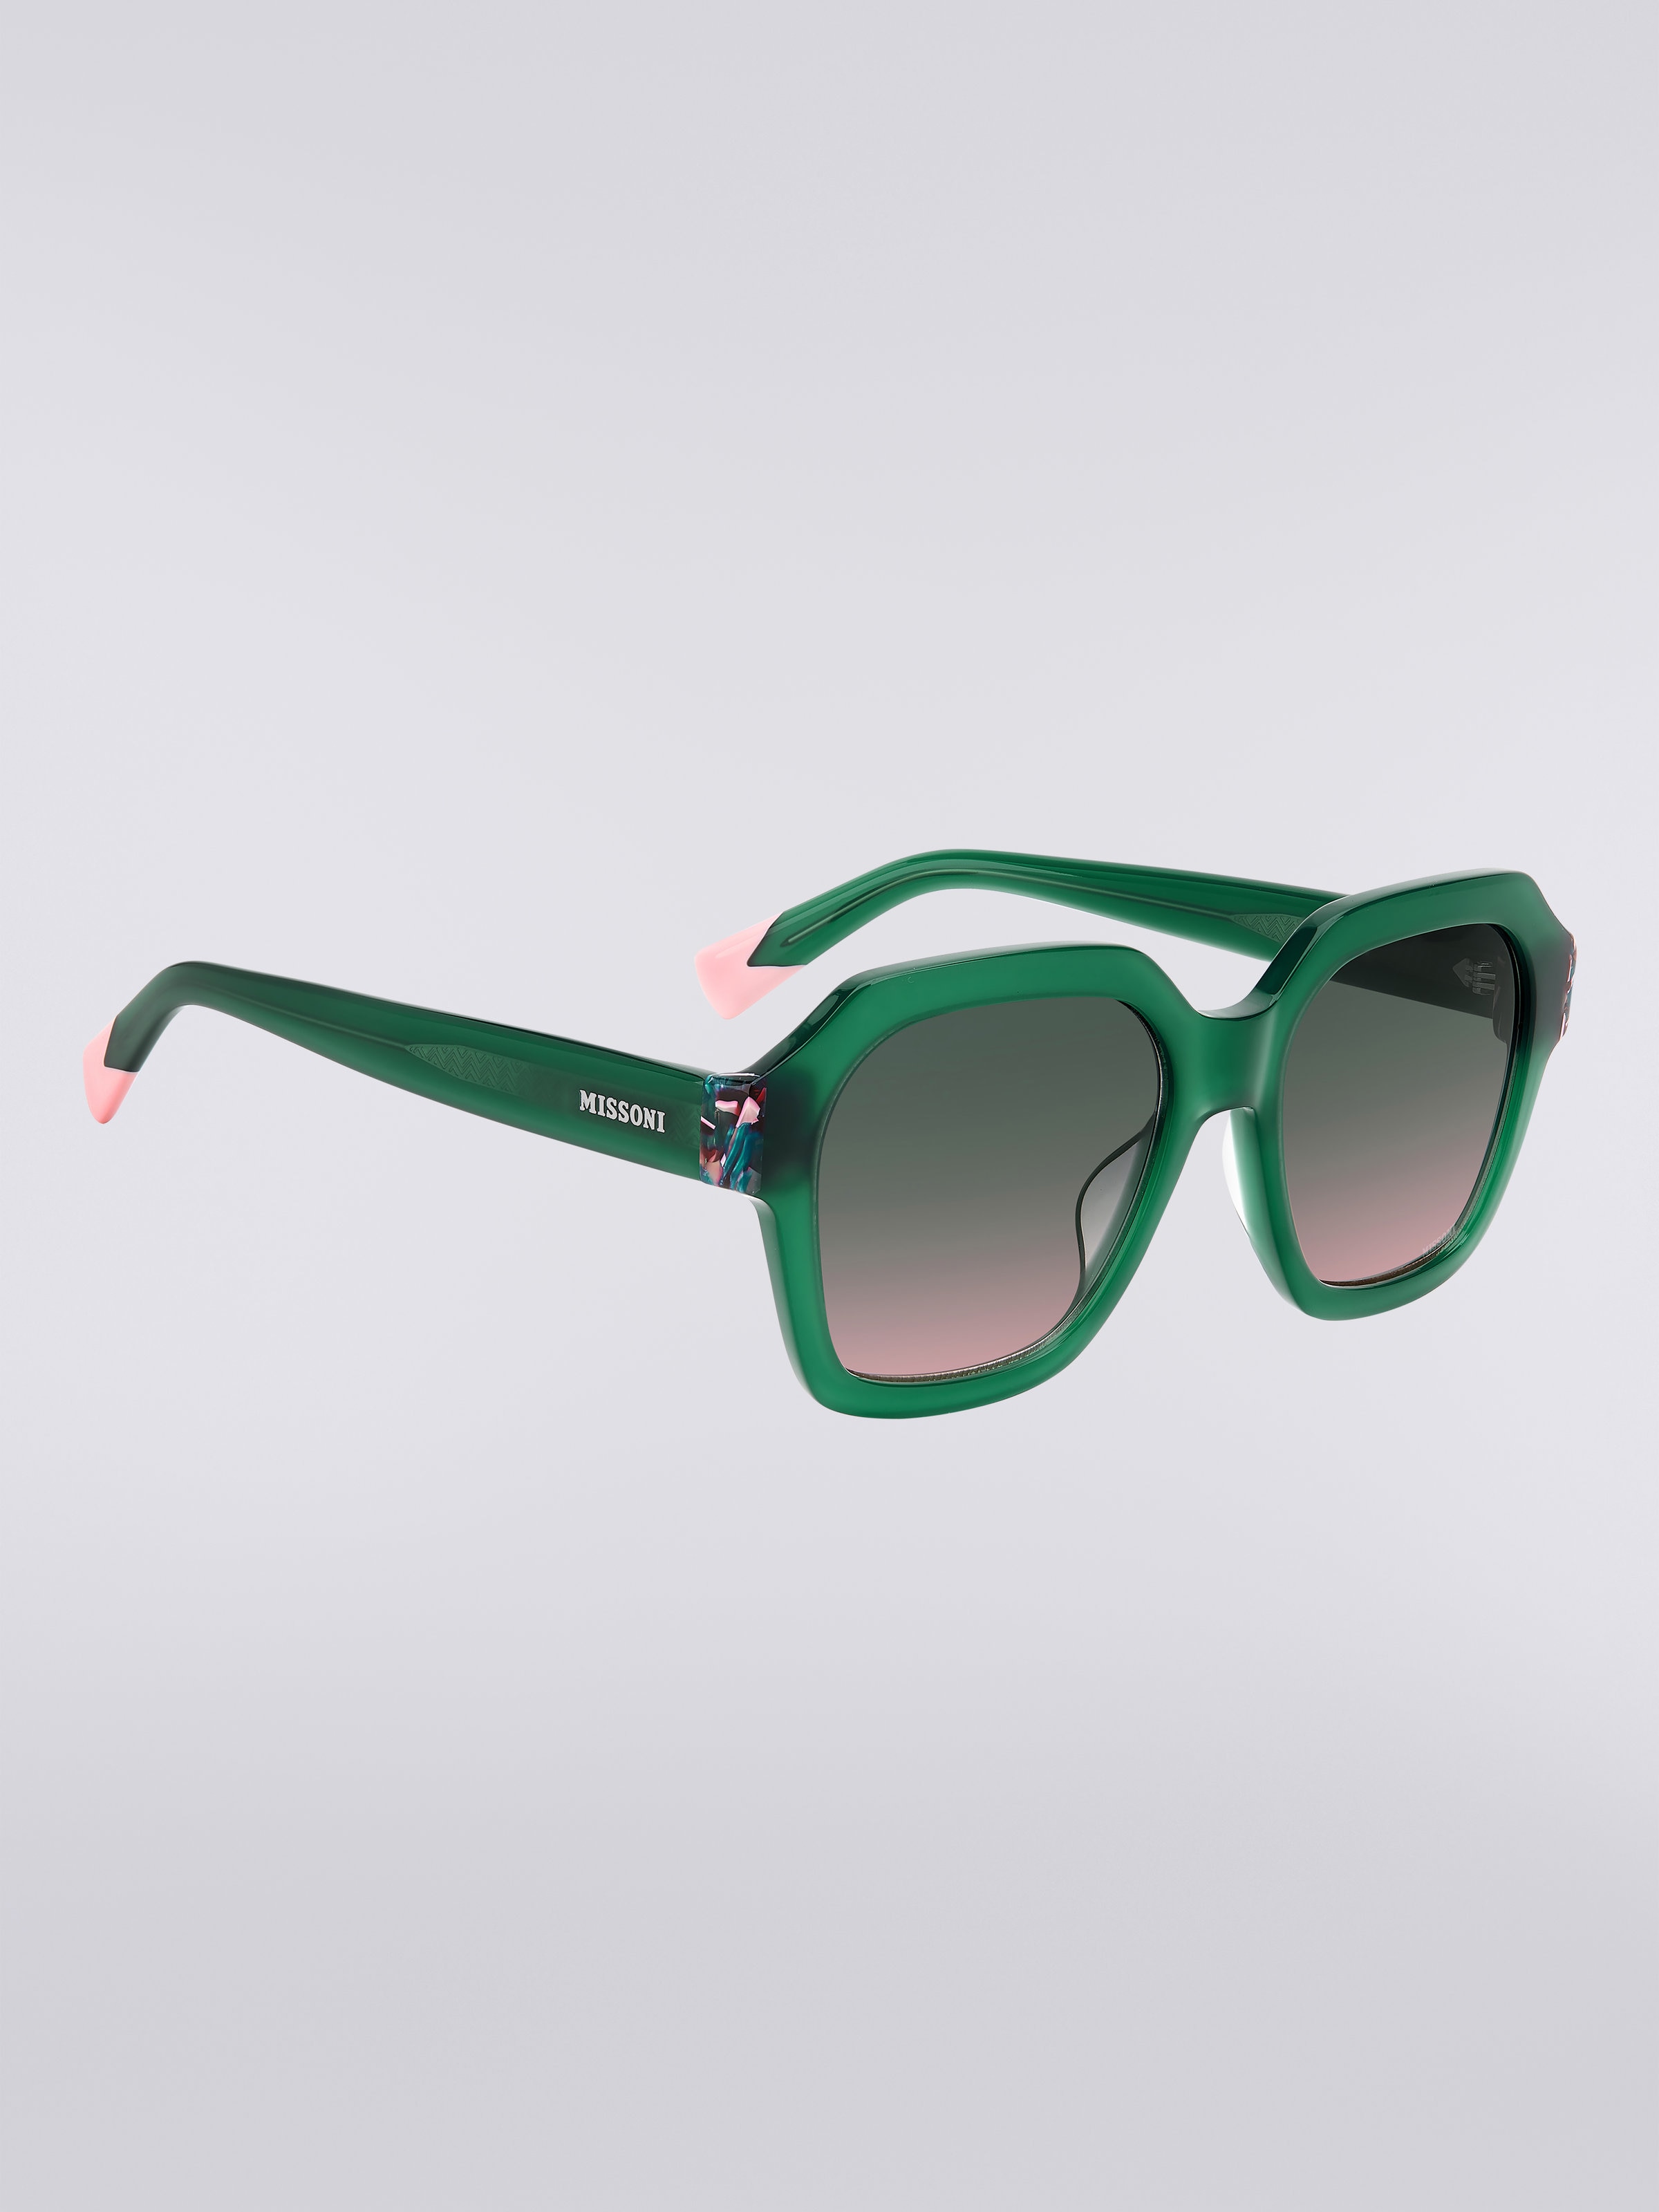 Missoni Seasonal Sonnenbrille aus Acetat, Grün & Rosa - 2